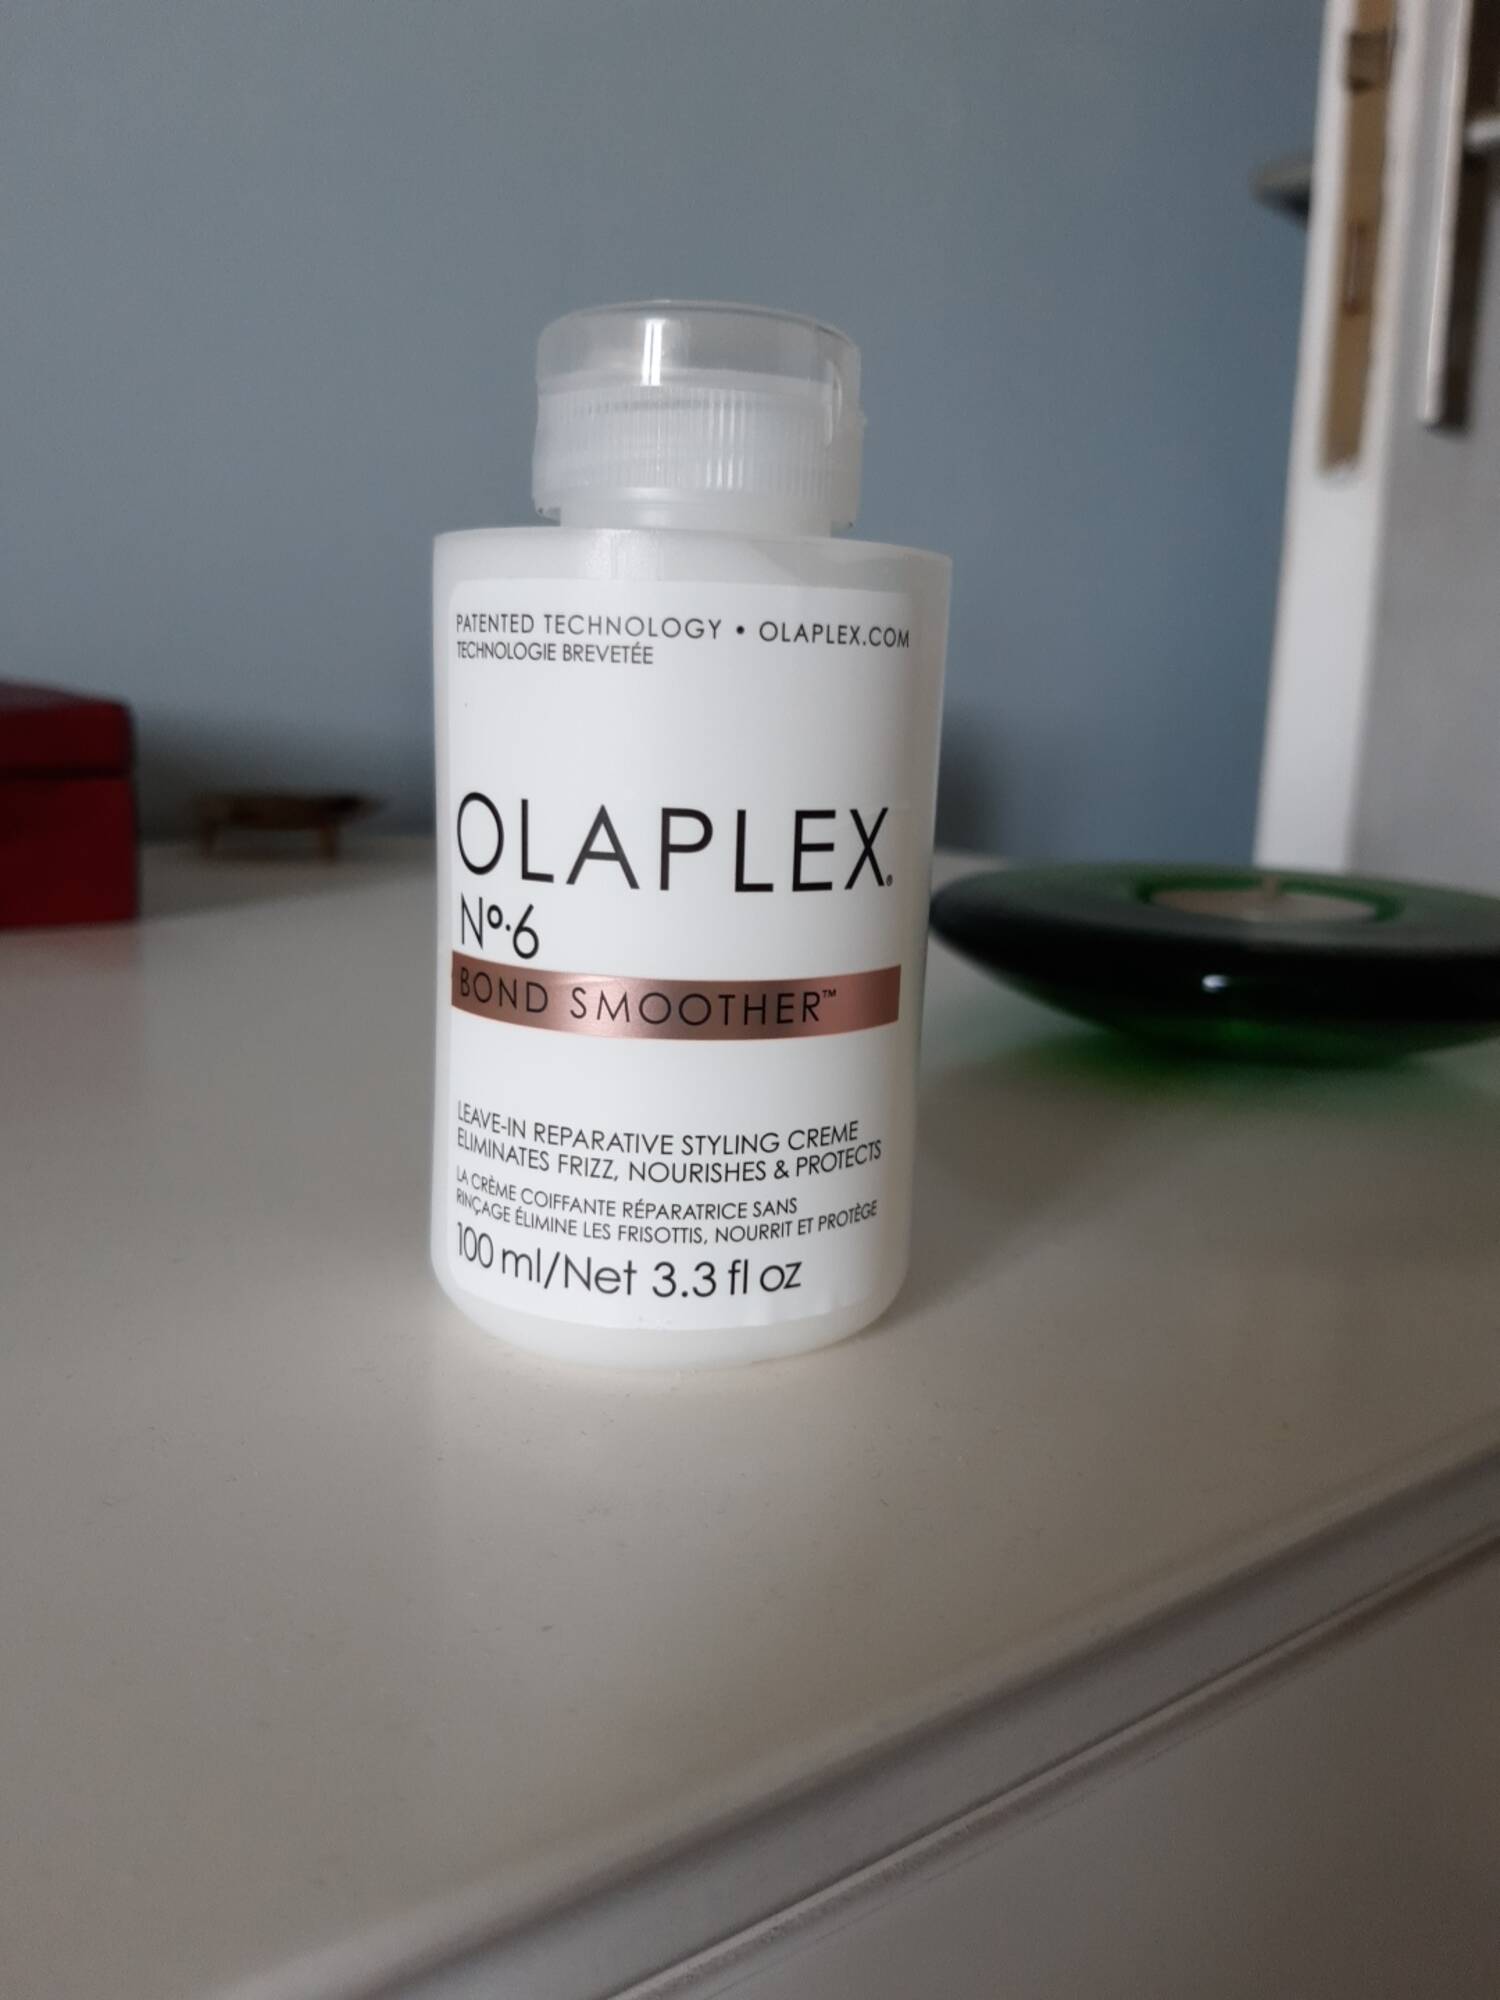 OLAPLEX - N°6 bond smoother - La crème coiffante réparatrice